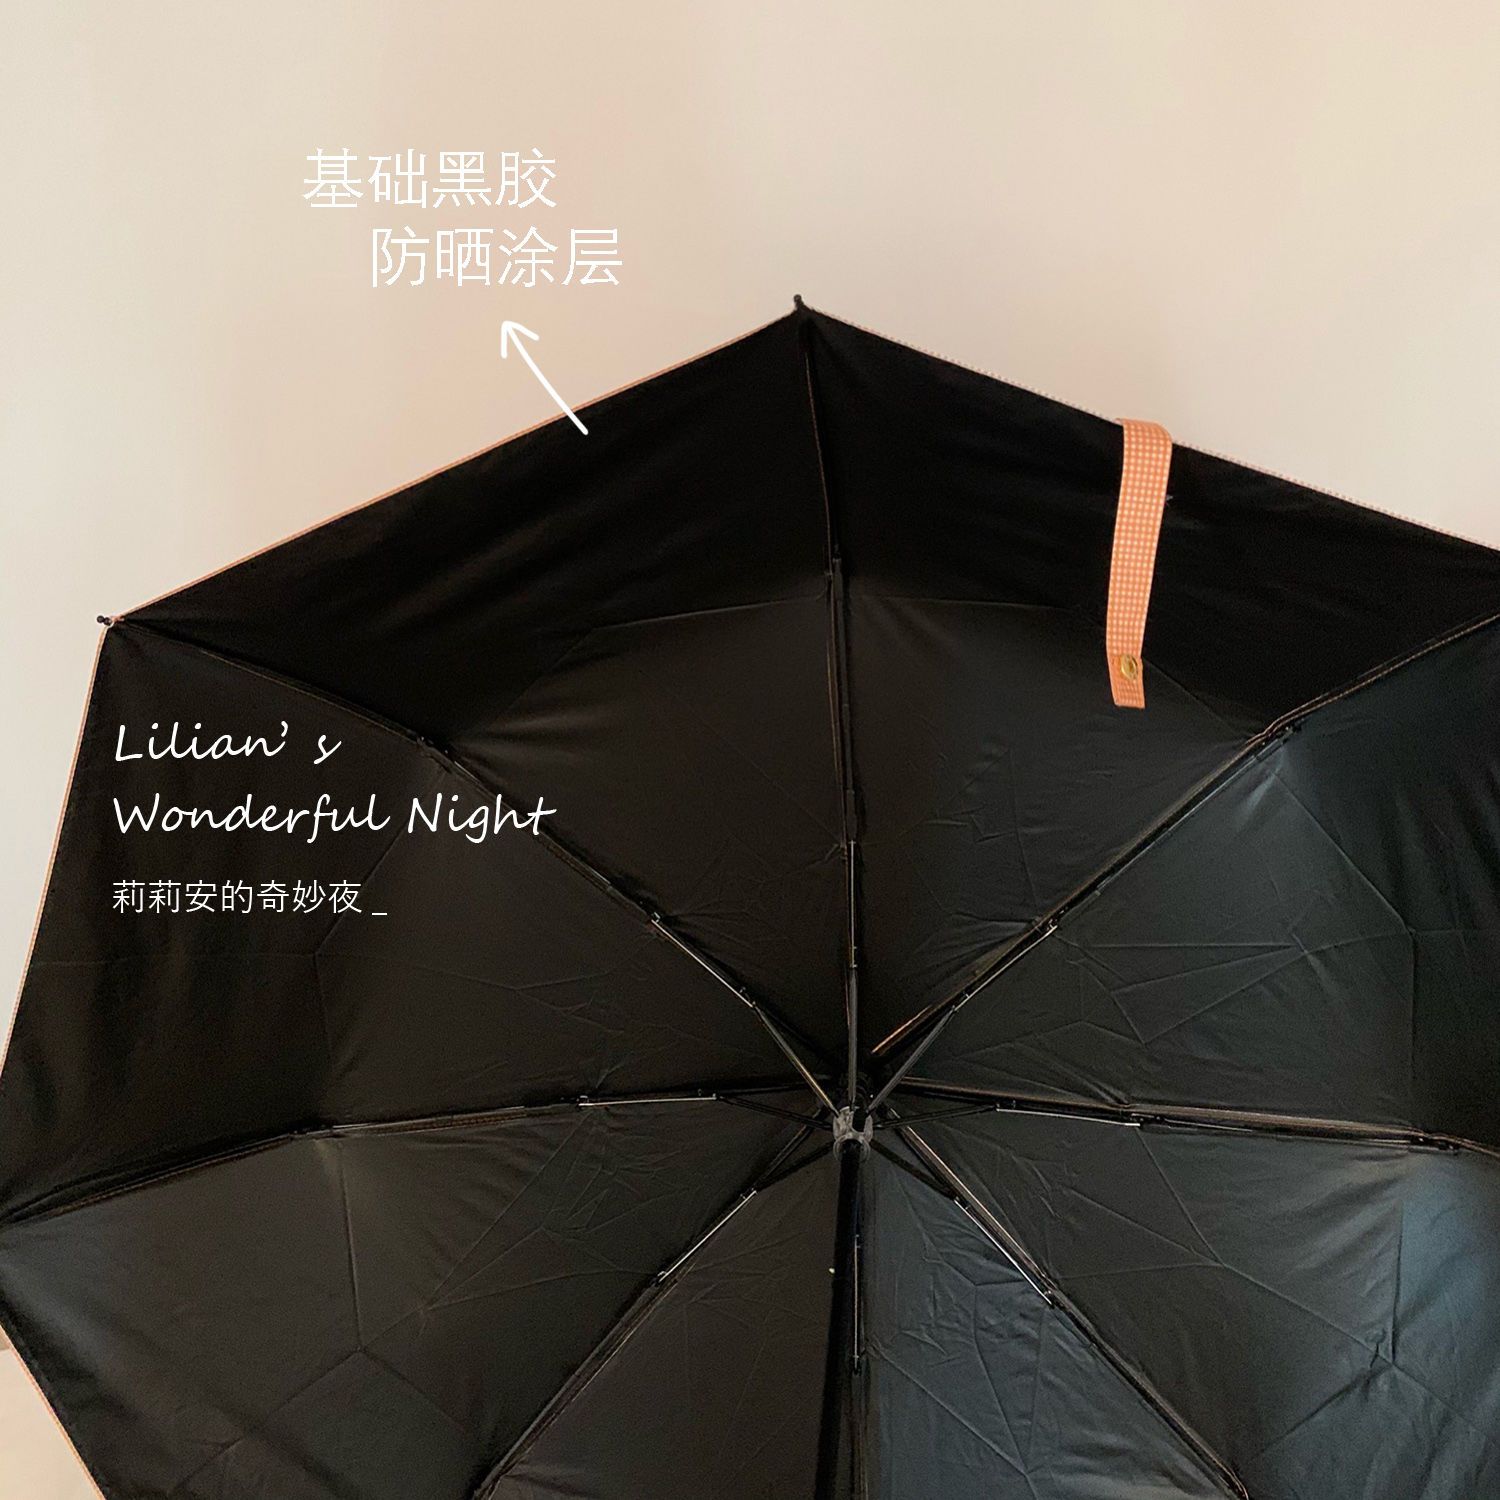 莉莉安柑橘格子雨伞女学生韩版超流行色系黑胶防晒遮阳伞晴雨两用